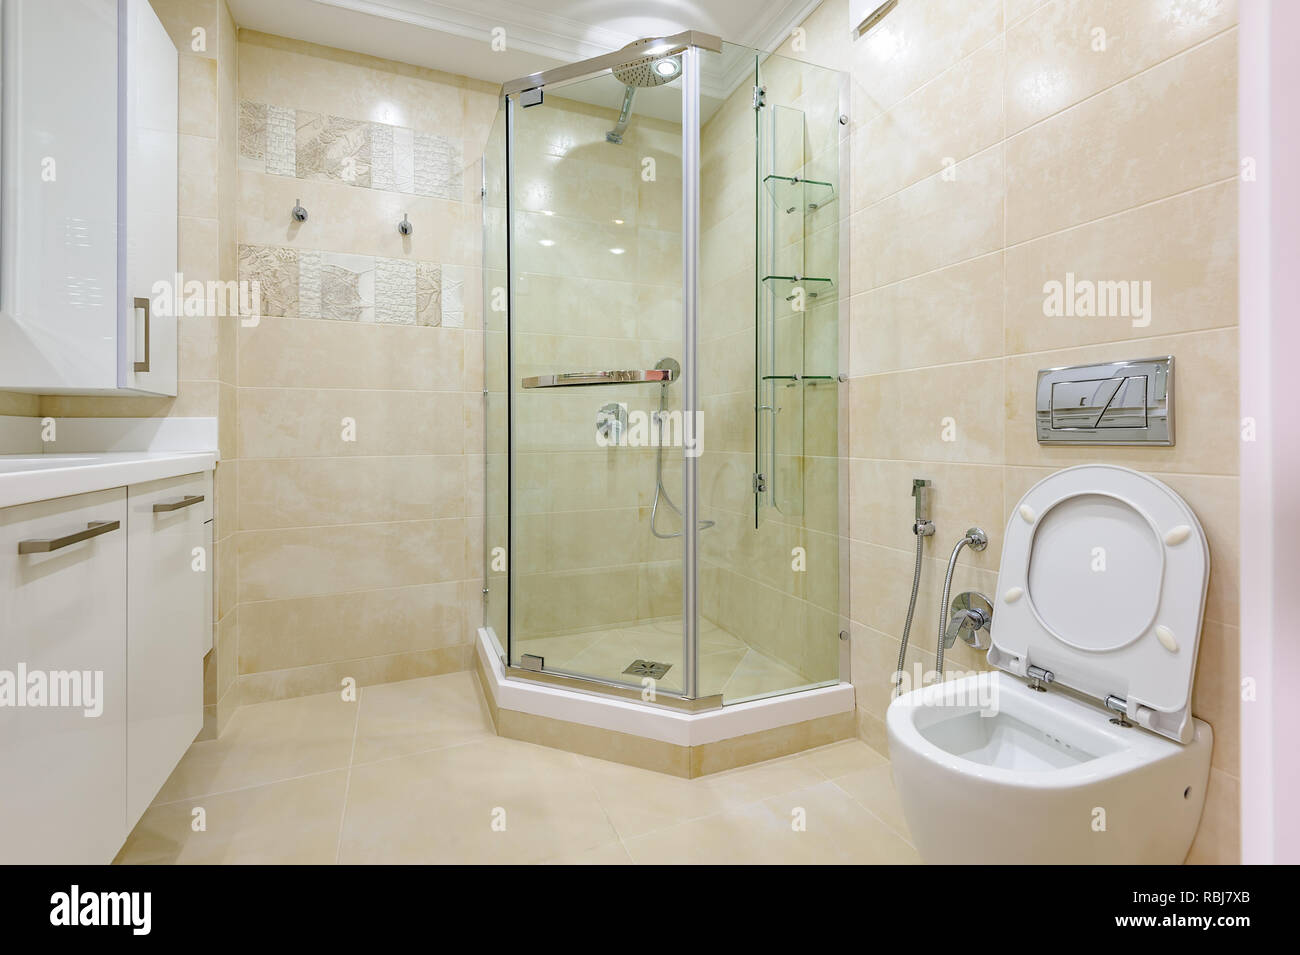 WC y ducha en el baño foto de archivo. Imagen de cristal - 215986852